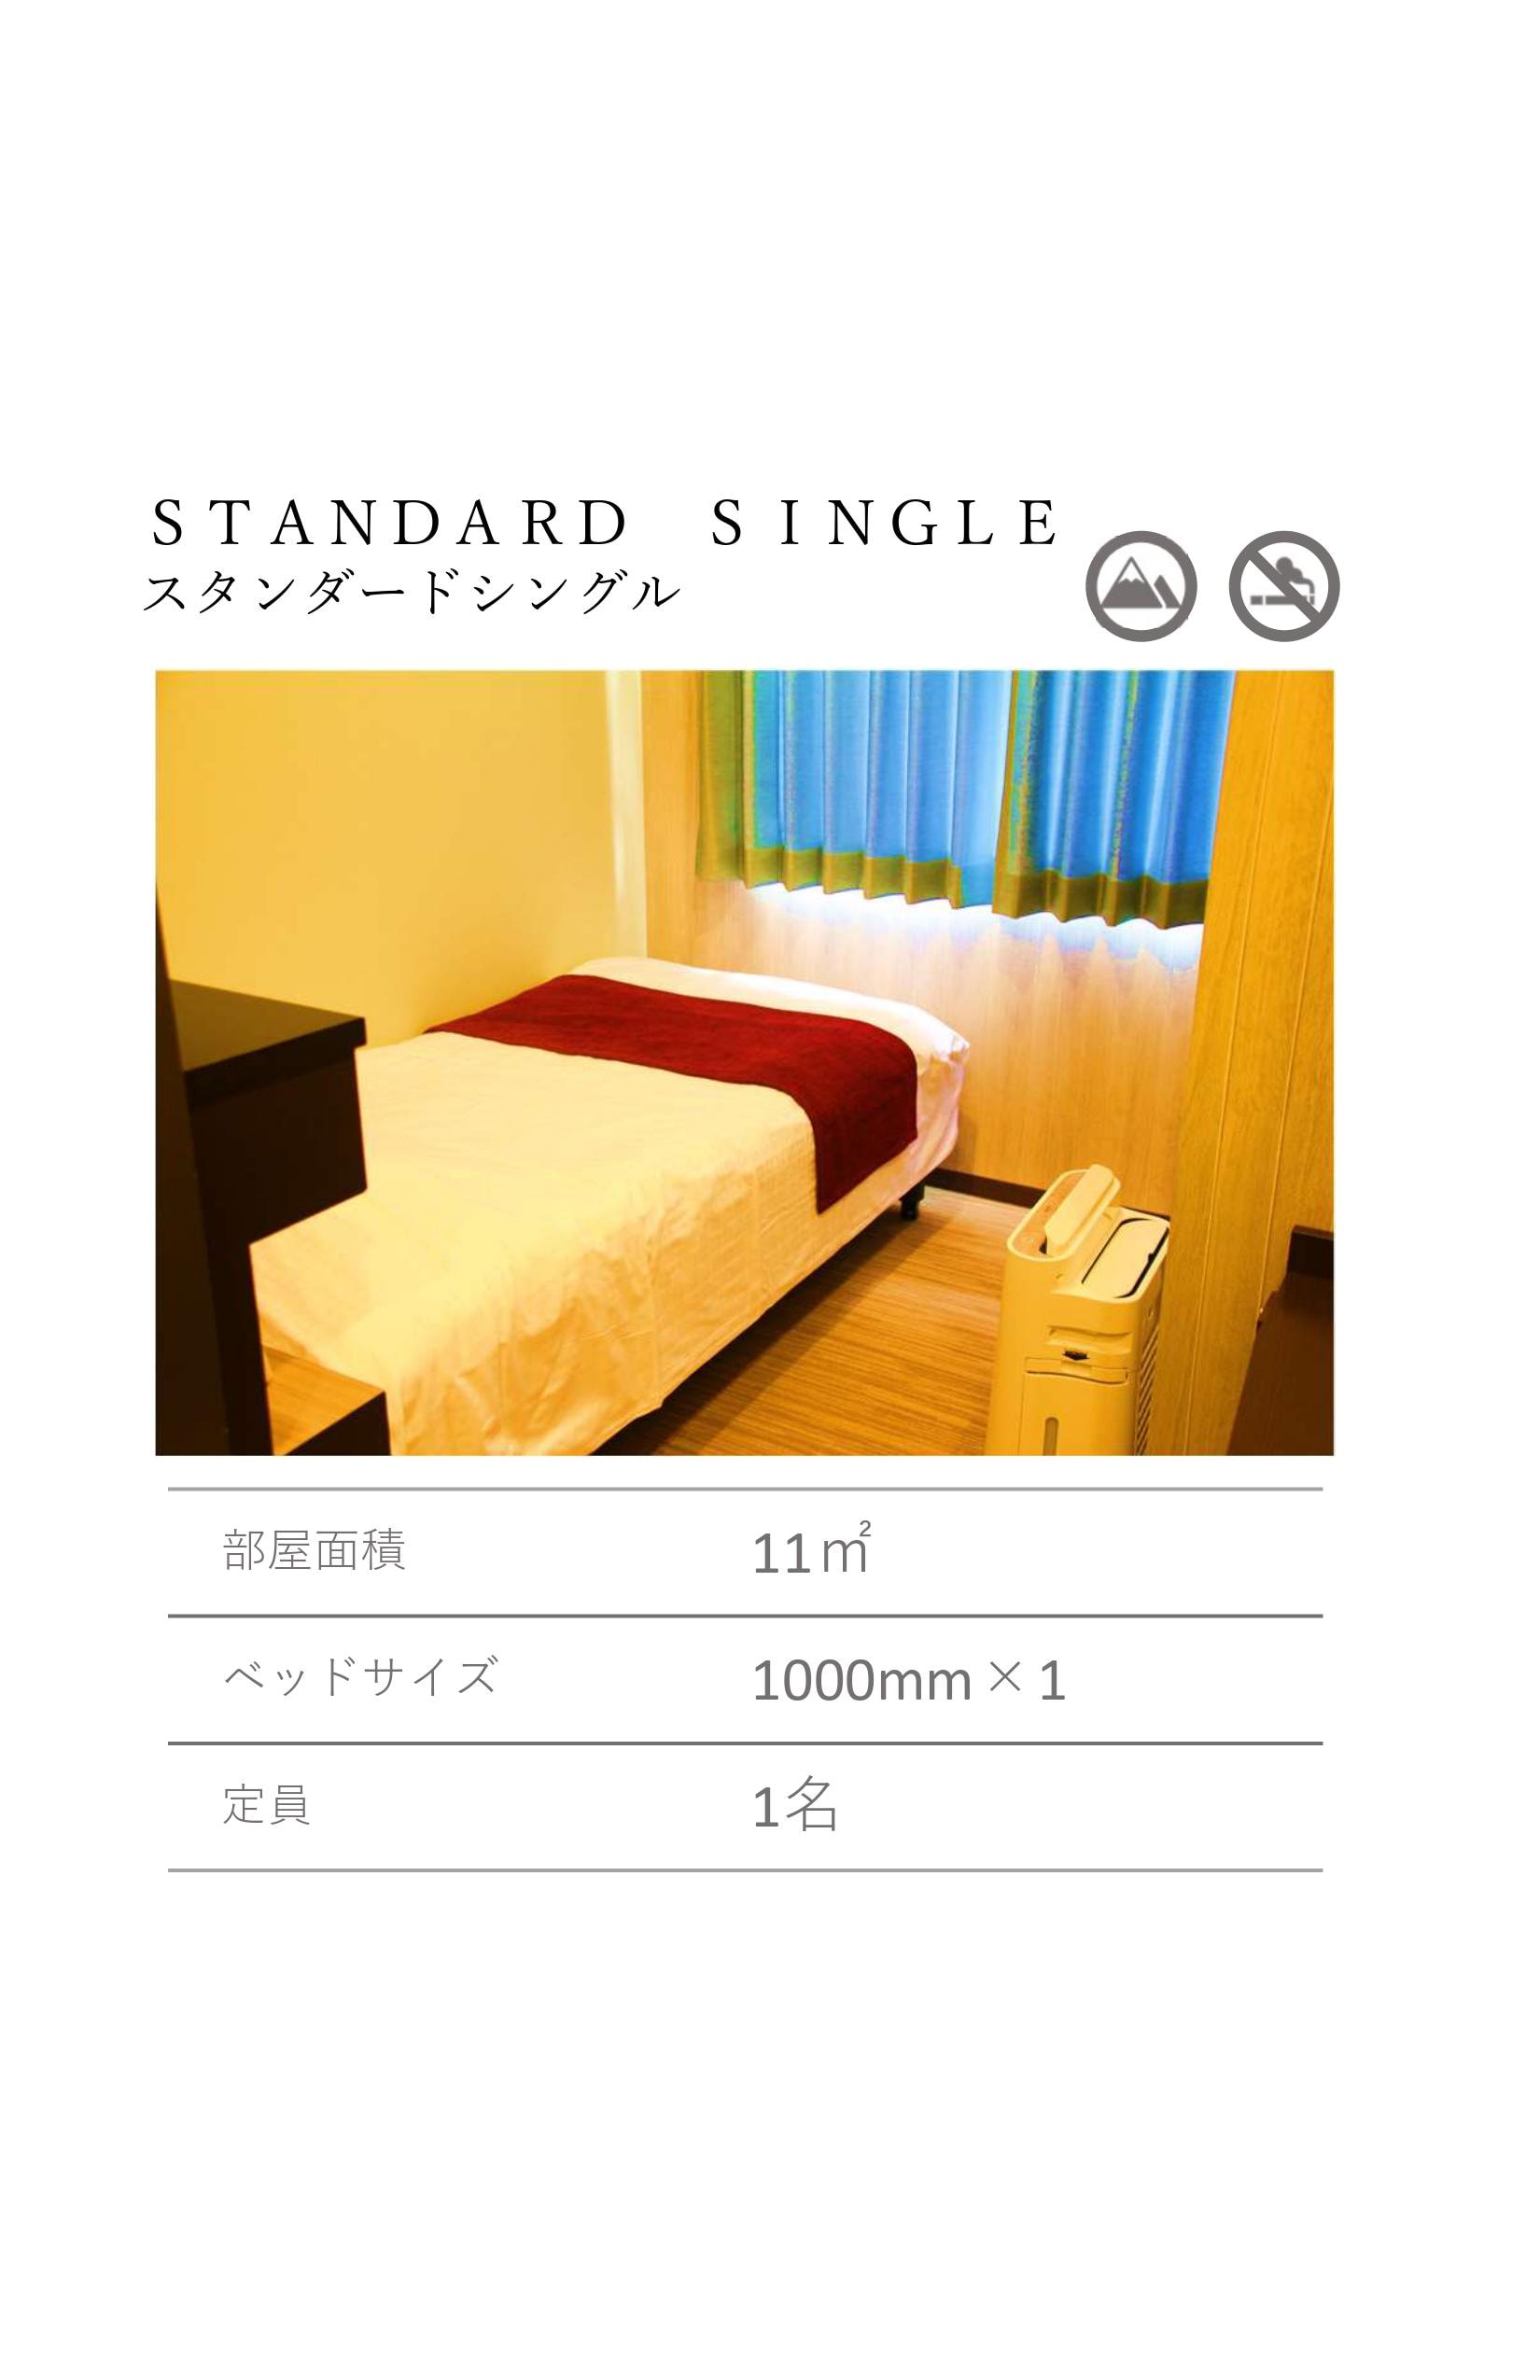 Standard single 1